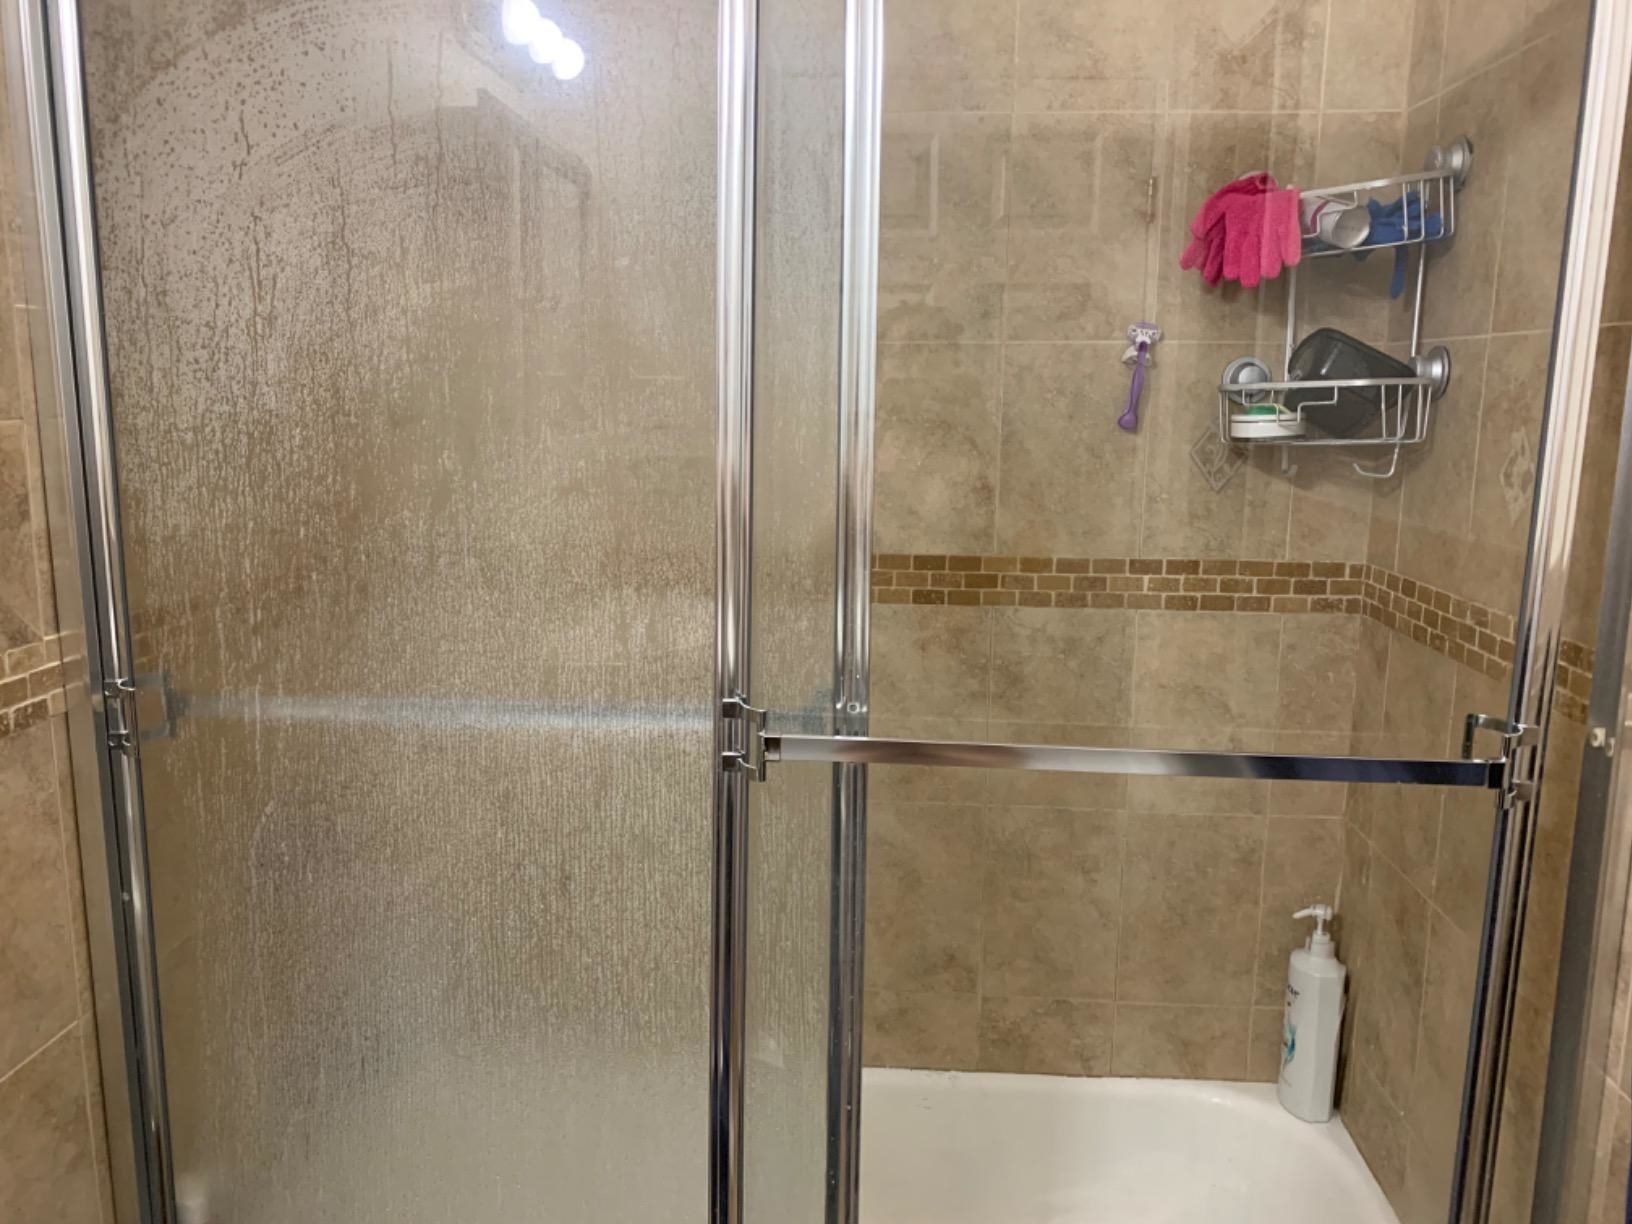 Reviewer image of stained shower door vs clean shower door